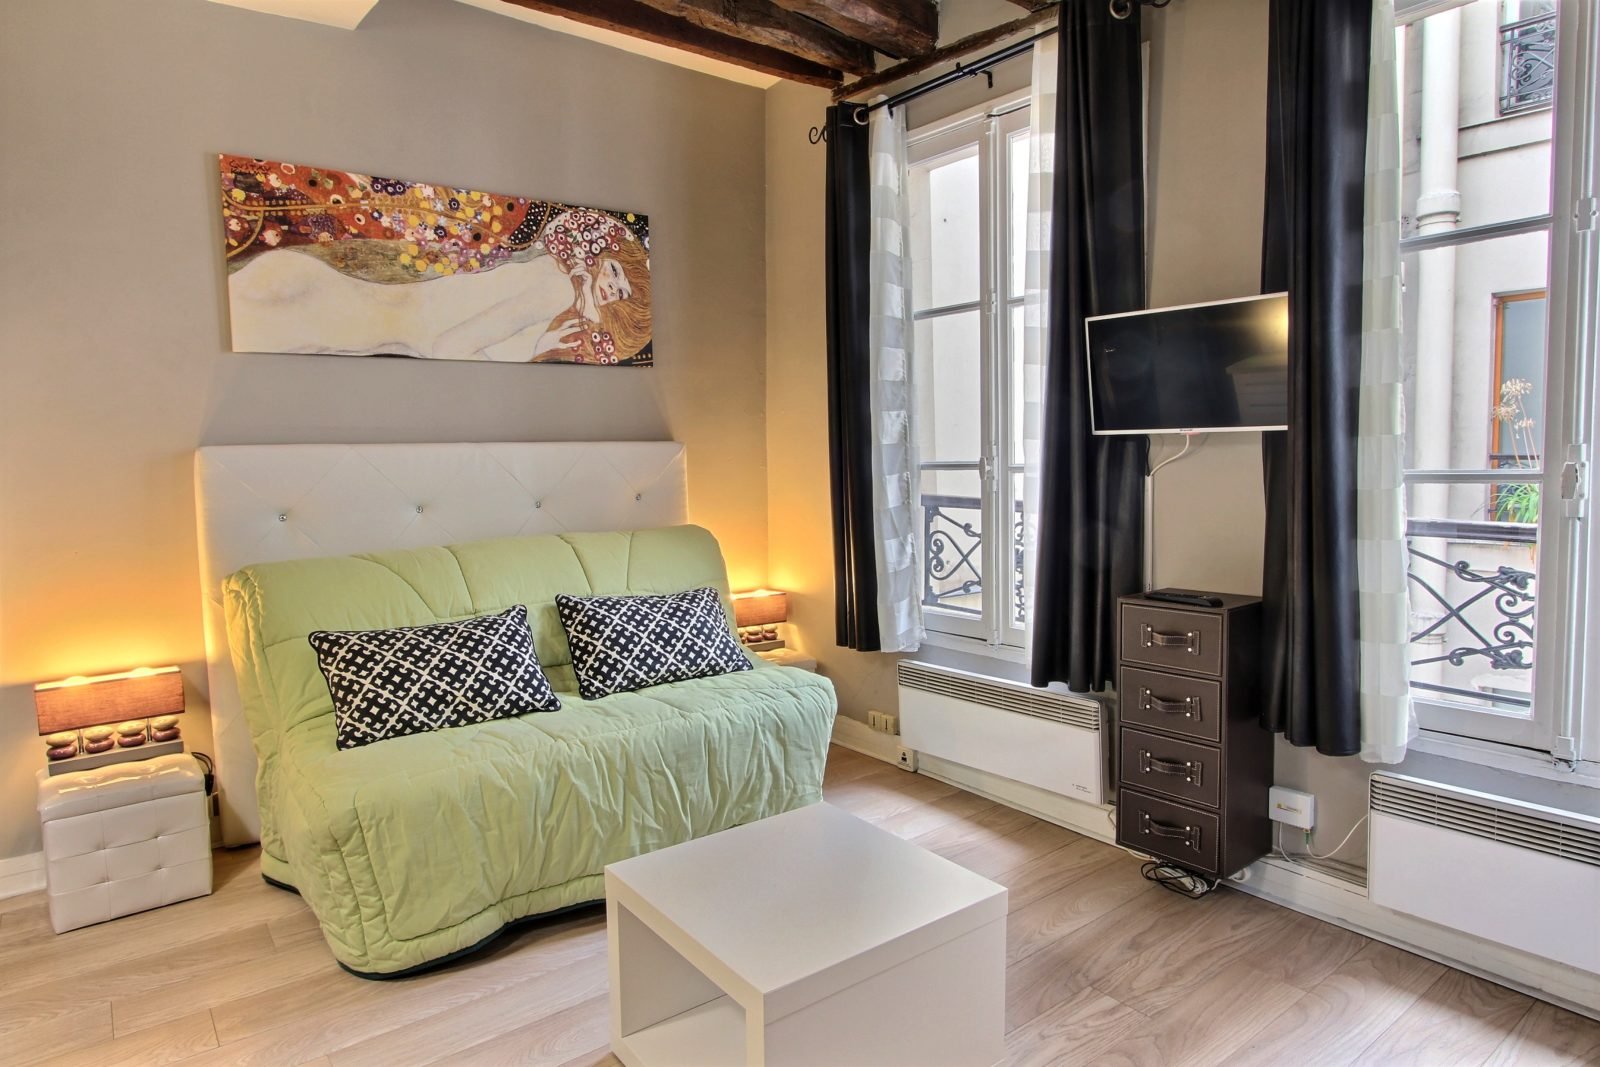 Studio rental in Paris, Rue de l'Arbre Sec